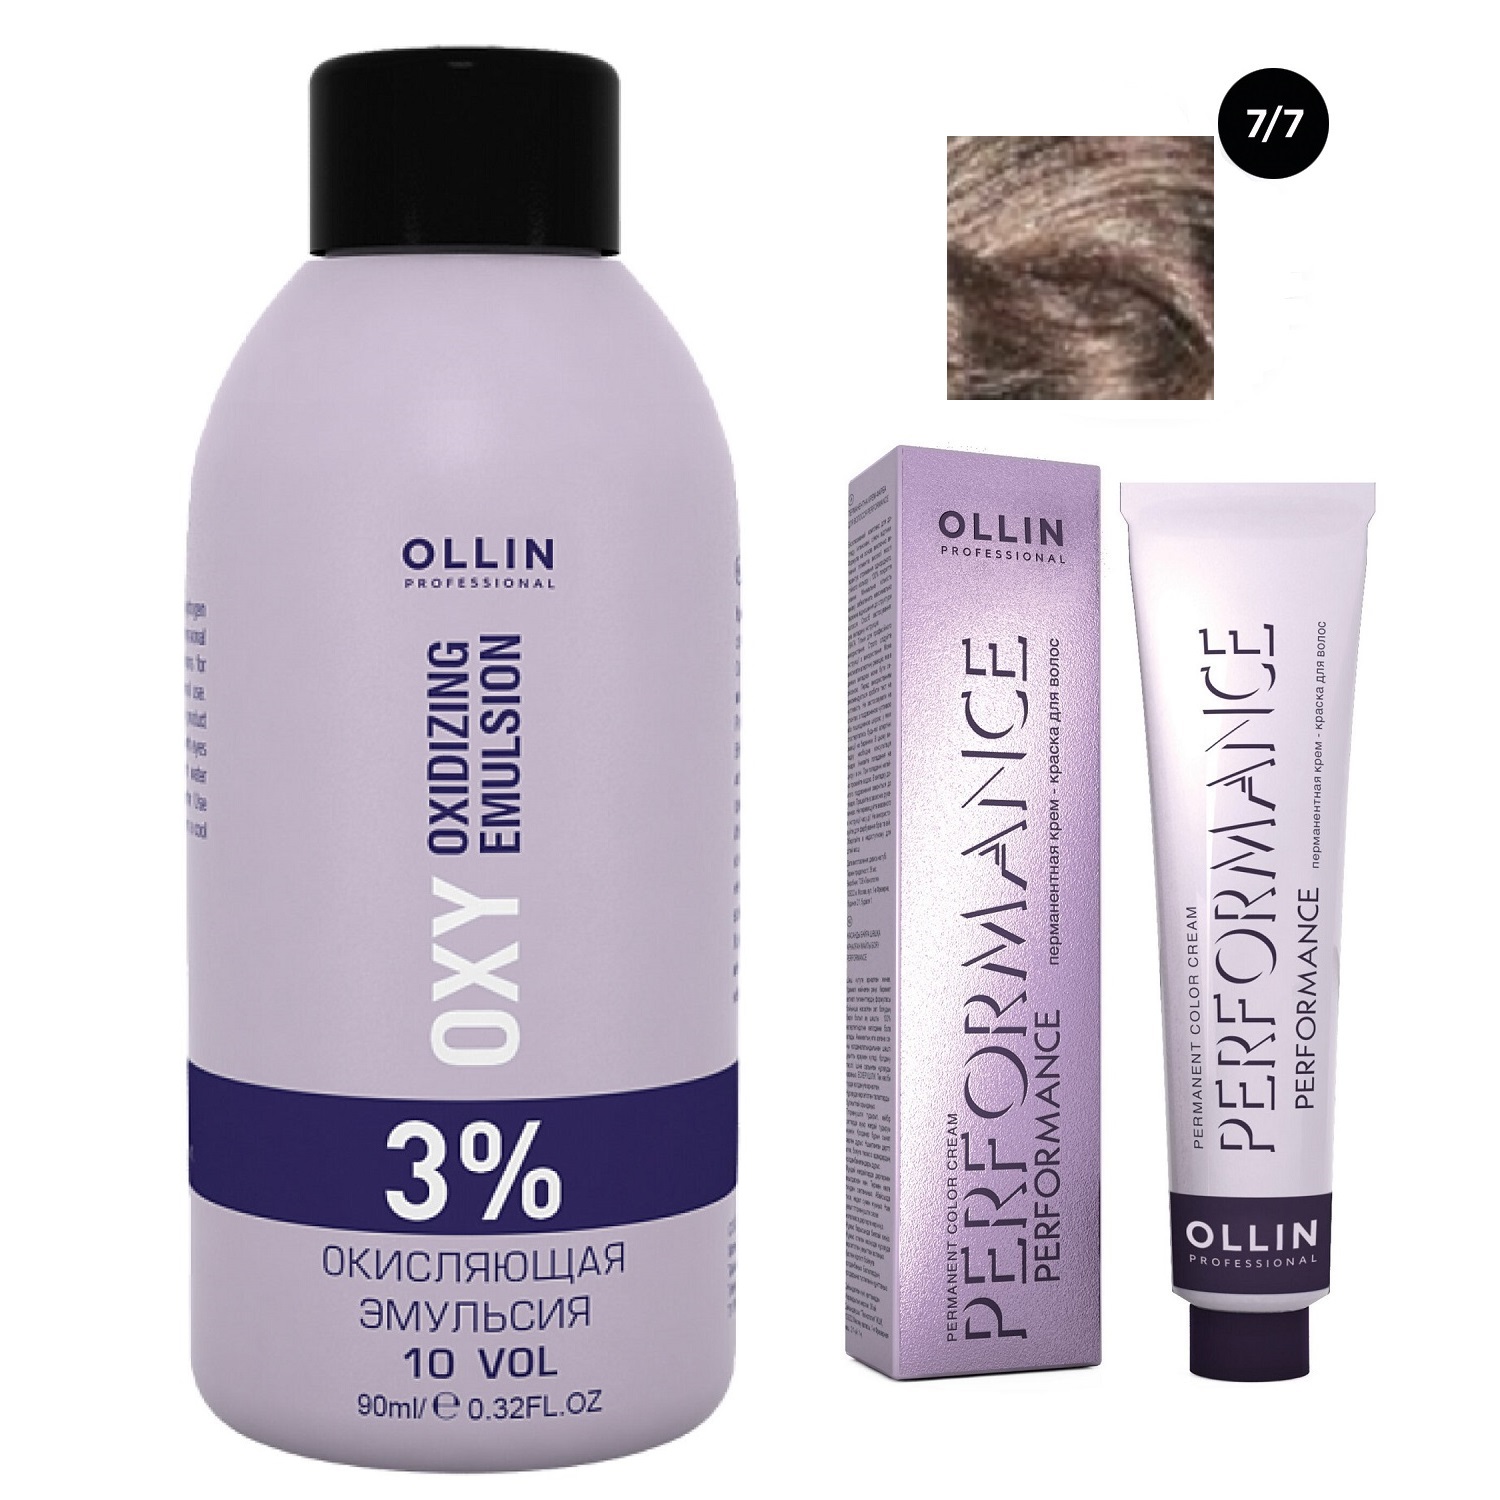 Ollin Professional Набор Перманентная крем-краска для волос Ollin Performance оттенок 7/7 русый коричневый 60 мл + Окисляющая эмульсия Oxy 3% 90 мл (Ollin Professional, Performance) цена и фото